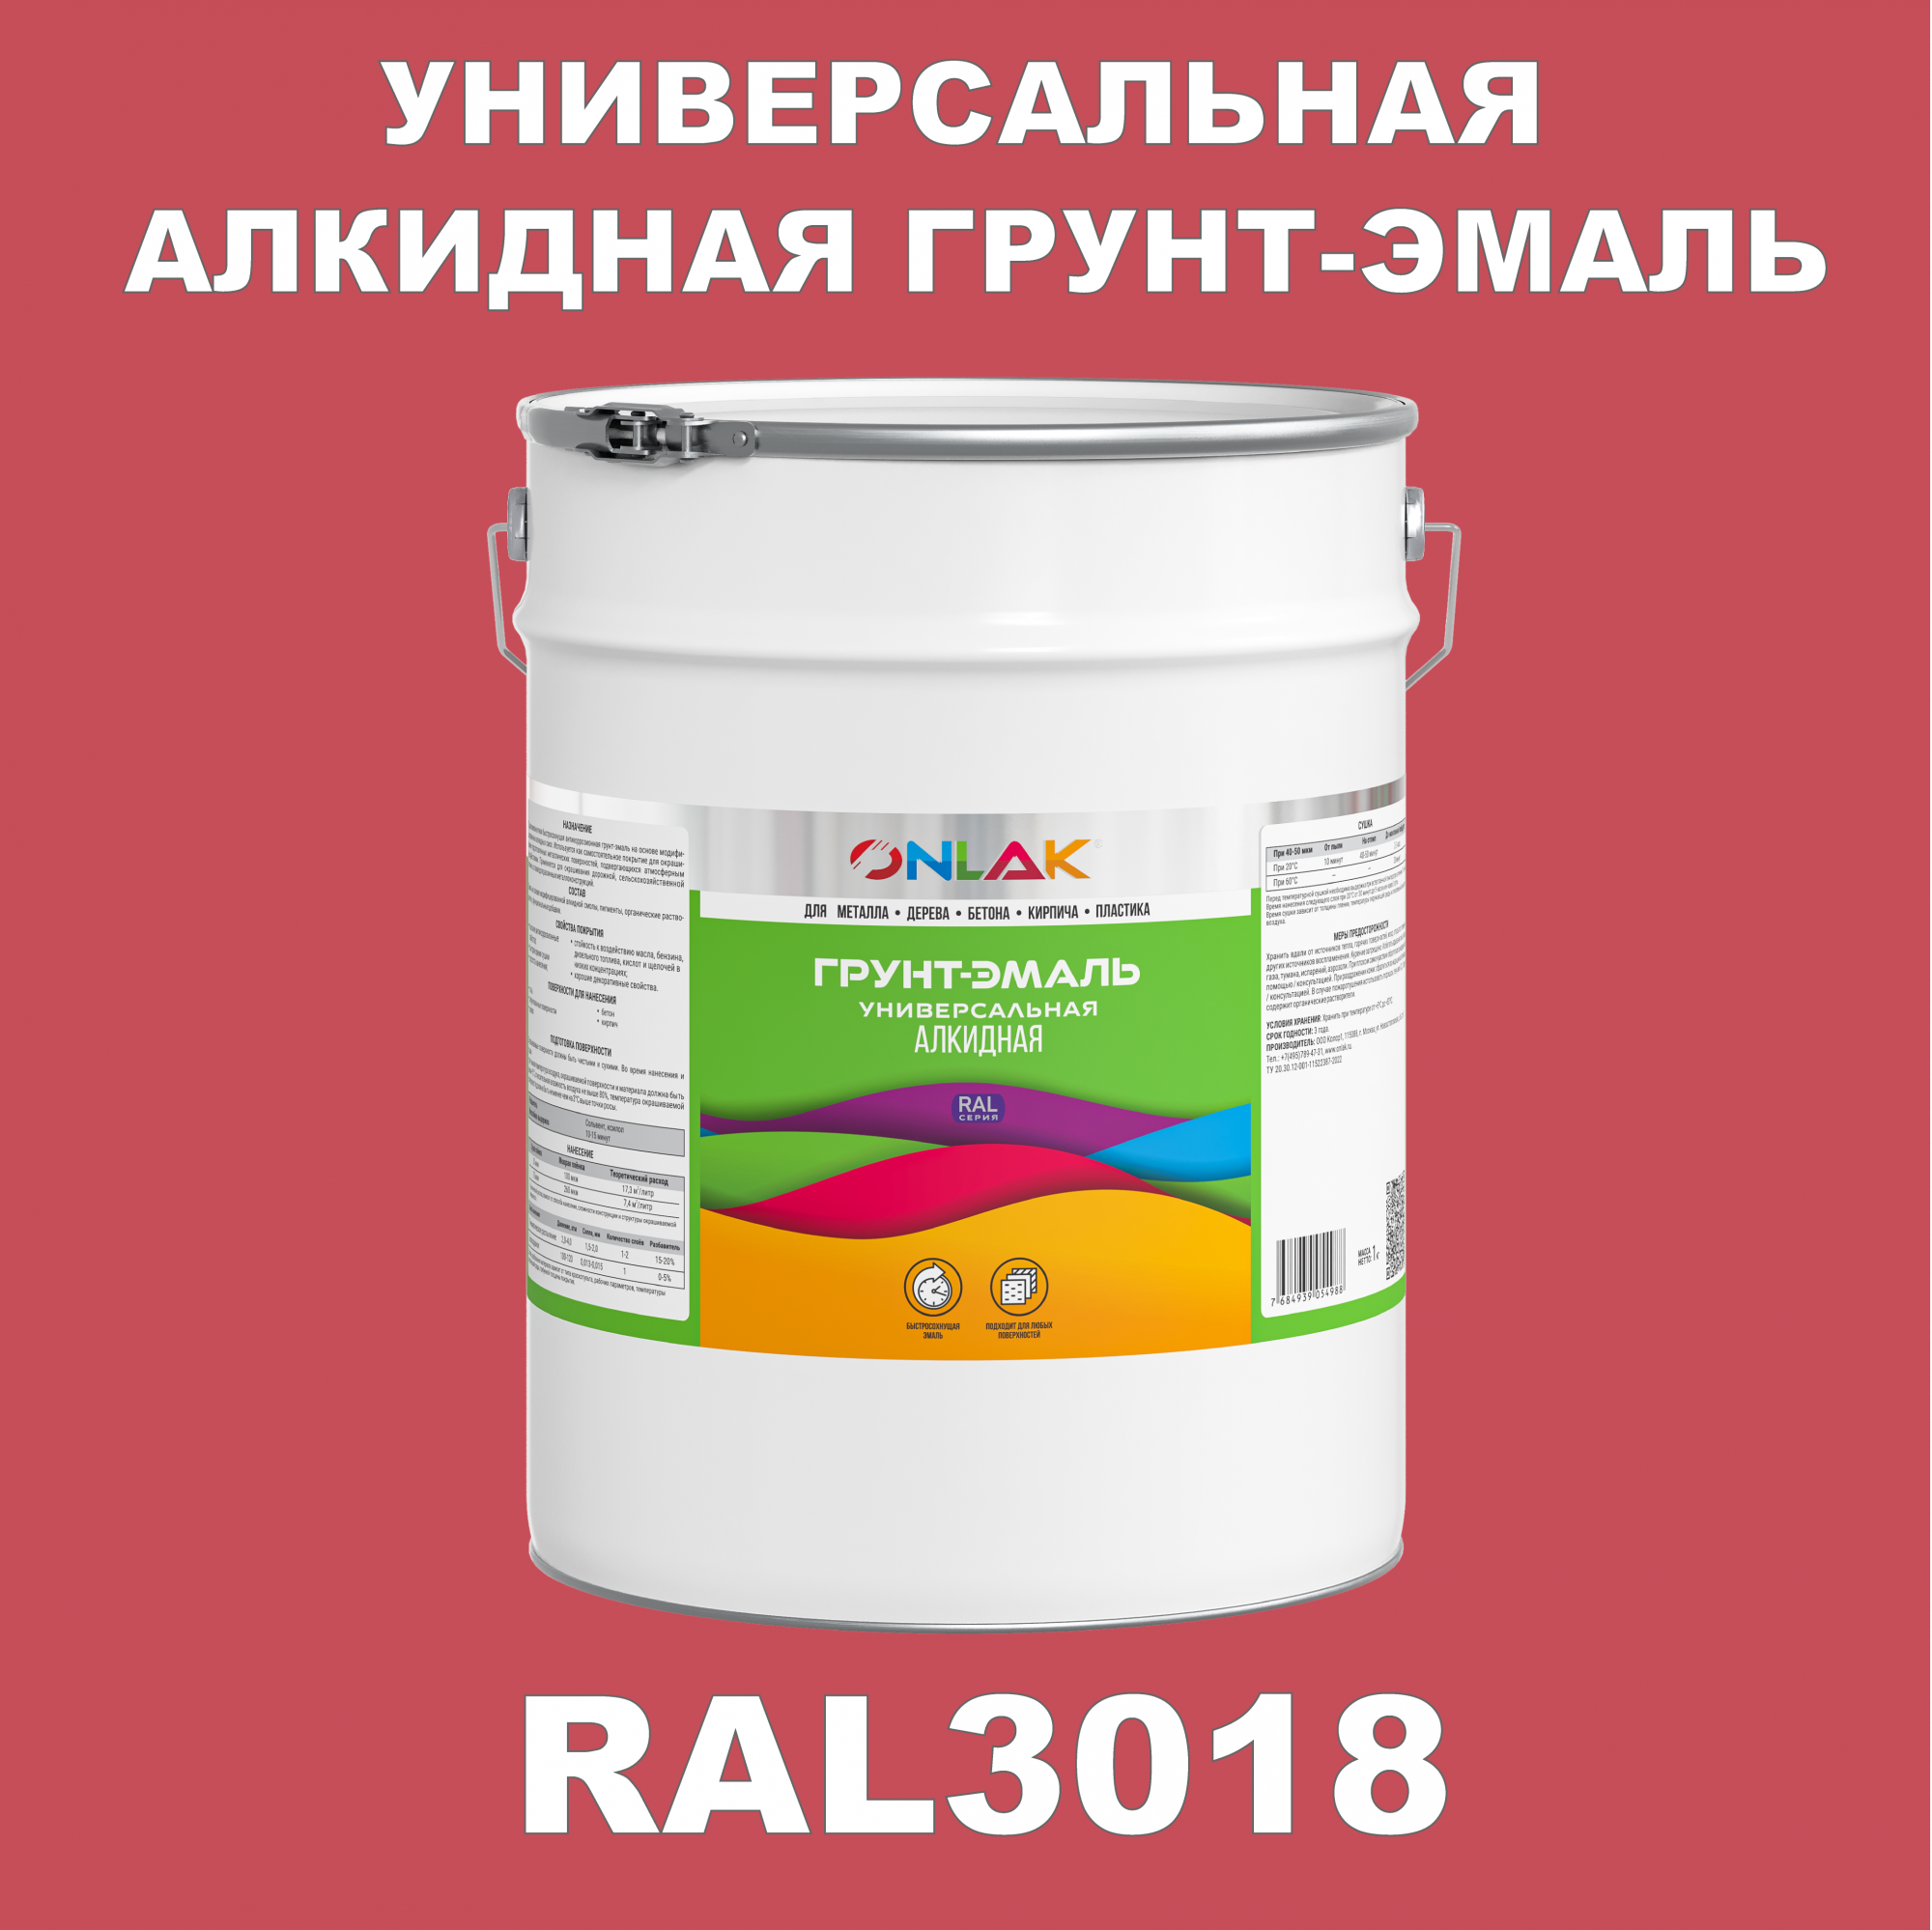 Грунт-эмаль ONLAK 1К RAL3018 антикоррозионная алкидная по металлу по ржавчине 20 кг грунт эмаль yollo по ржавчине алкидная белая 0 9 кг